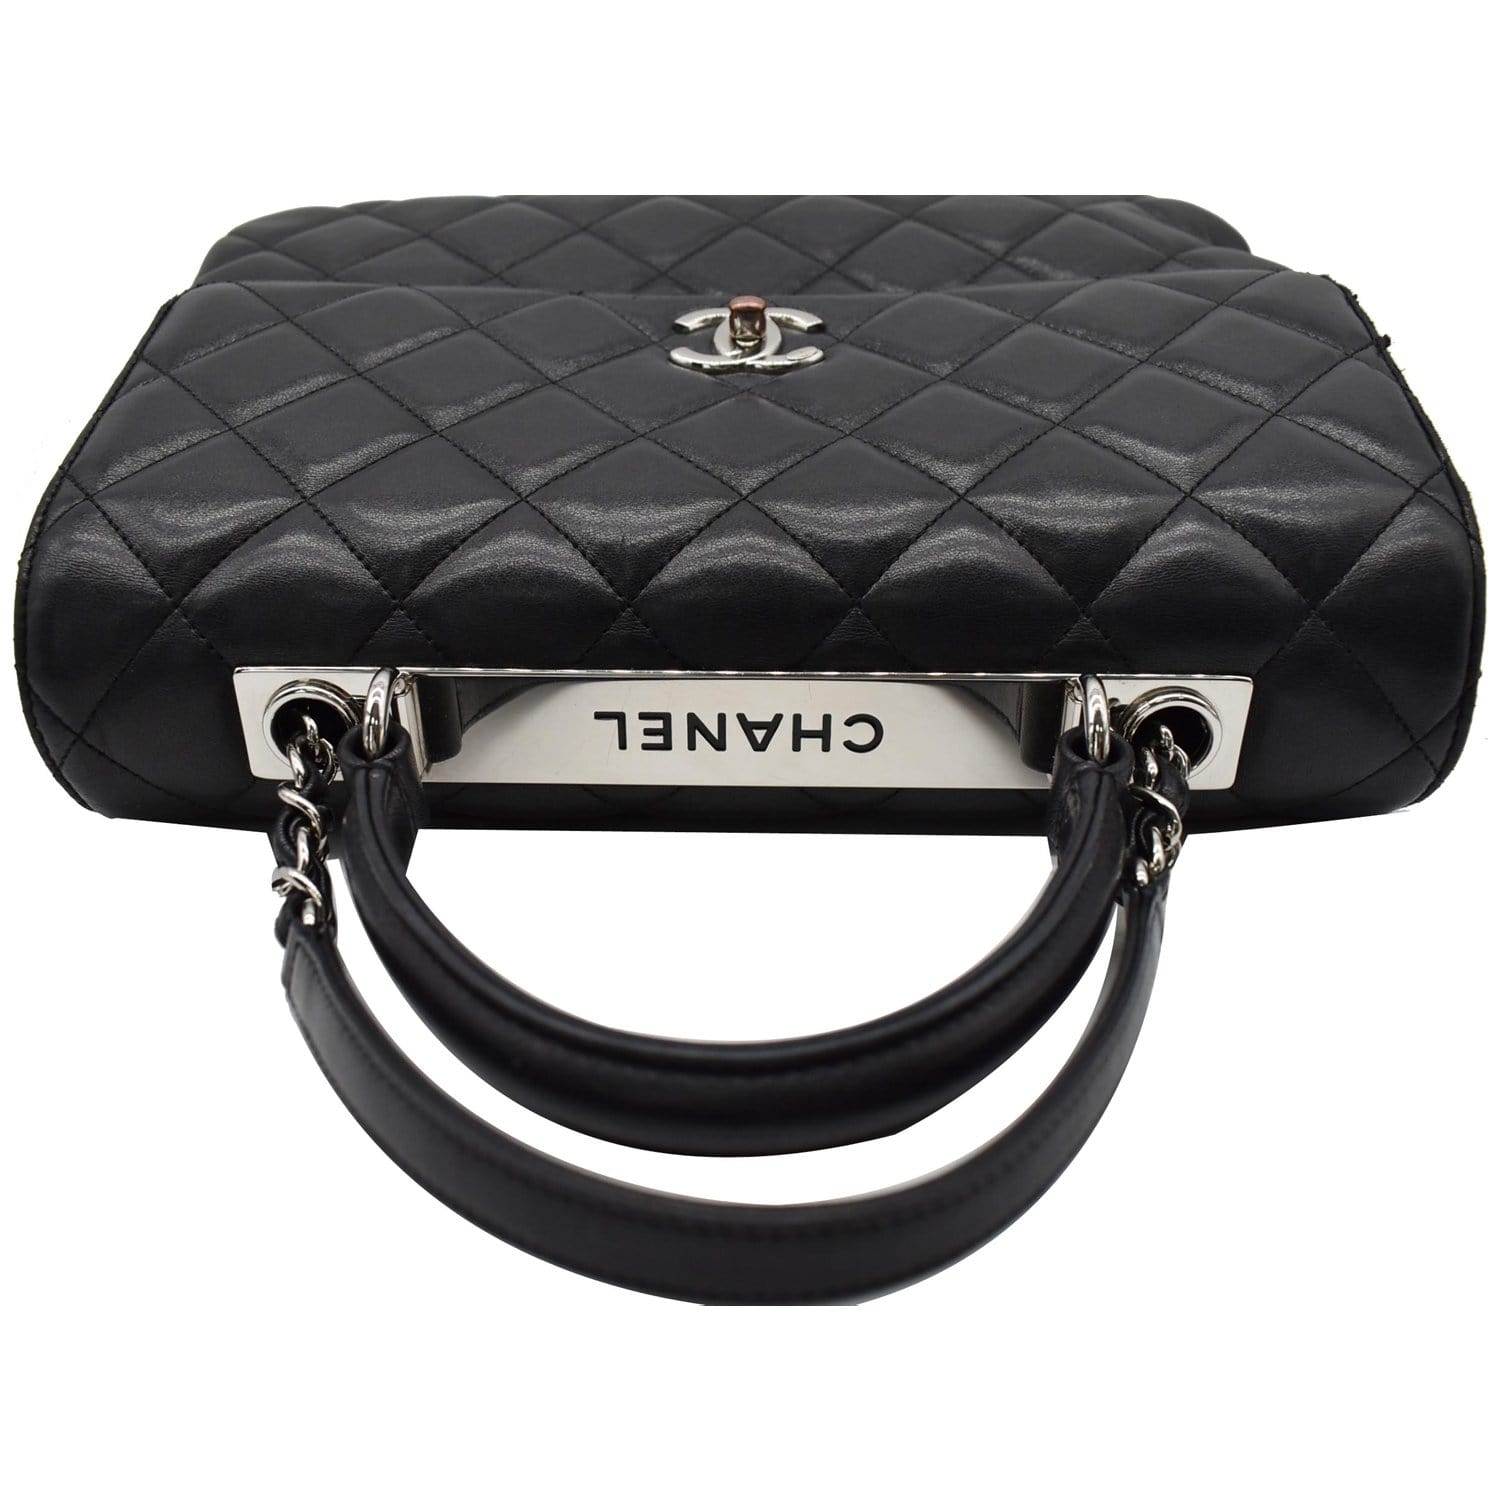 2016 Fall Chanel Trendy CC Small Bowling Bag